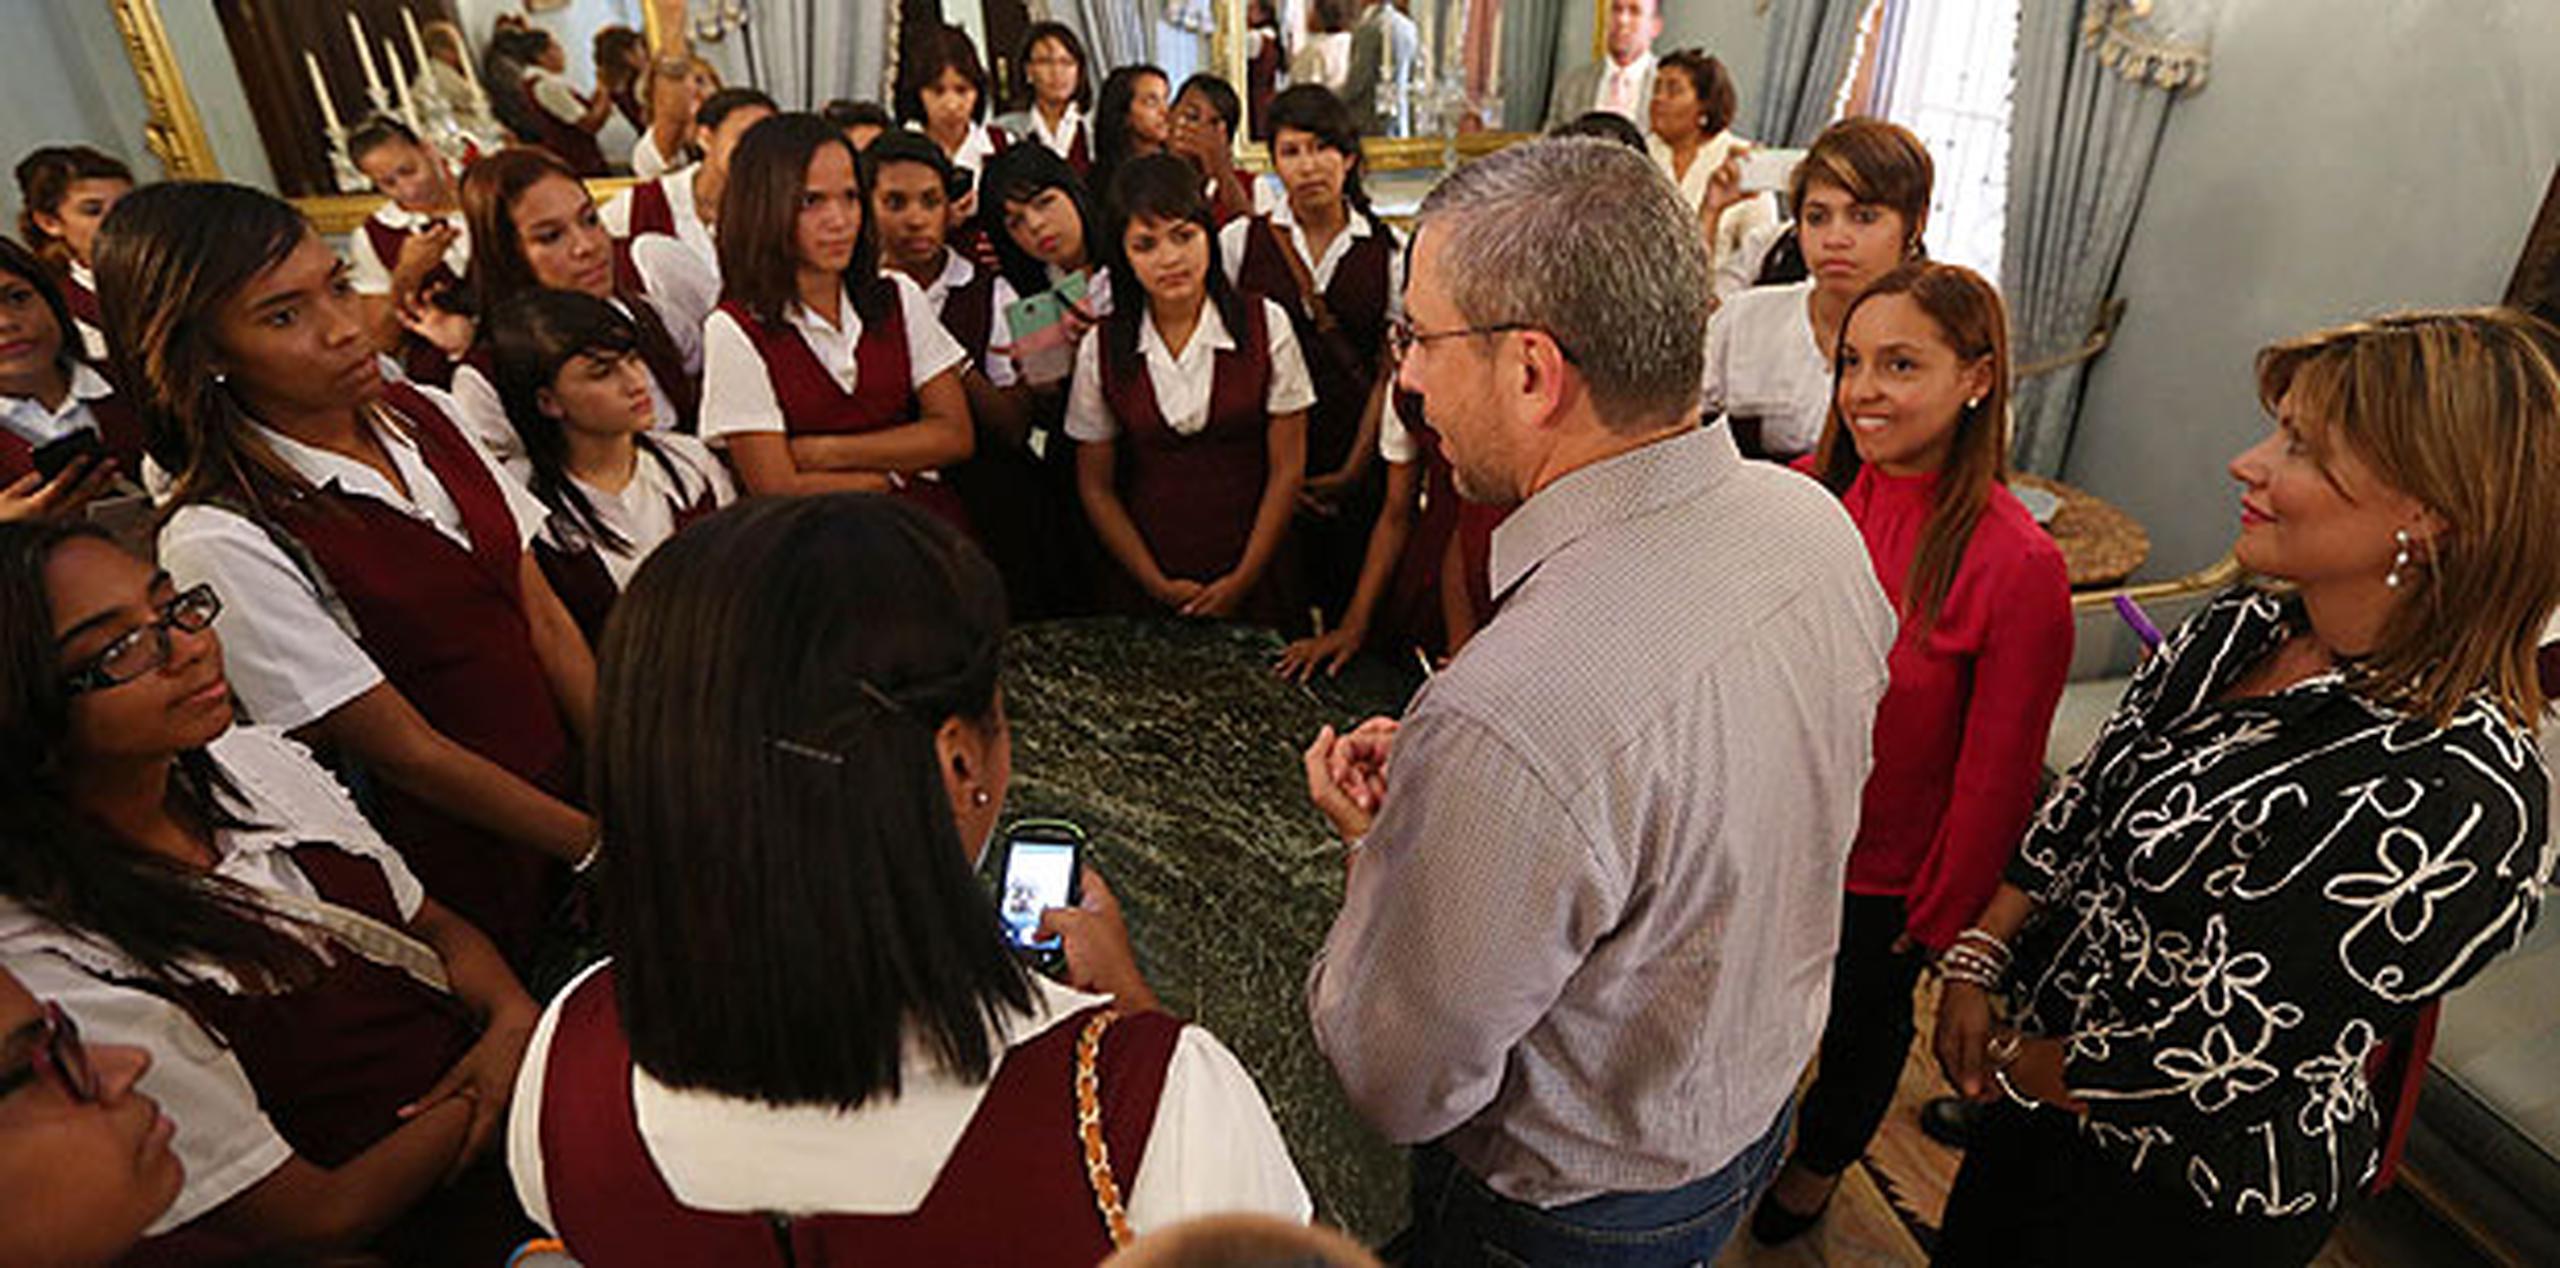 Pastrana ofreció un recorrido a las estudiantes a través del Palacio de Santa Catalina, donde también tuvieron la oportunidad de compartir junto al gobernador Alejandro García Padilla. (Suministrada)